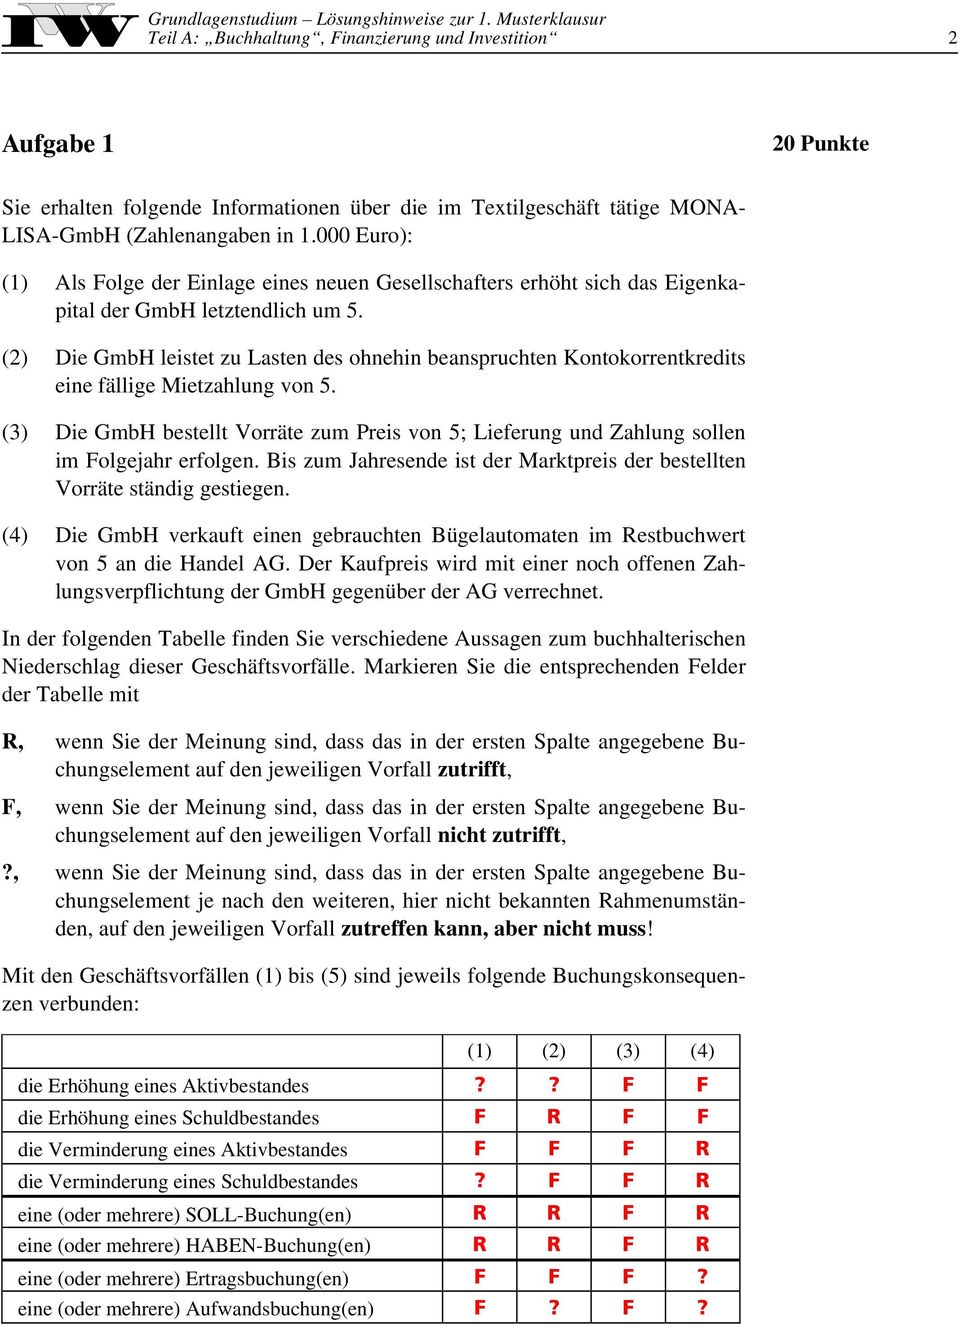 (2) Die GmbH leistet zu Lasten des ohnehin beanspruchten Kontokorrentkredits eine fällige Mietzahlung von 5.